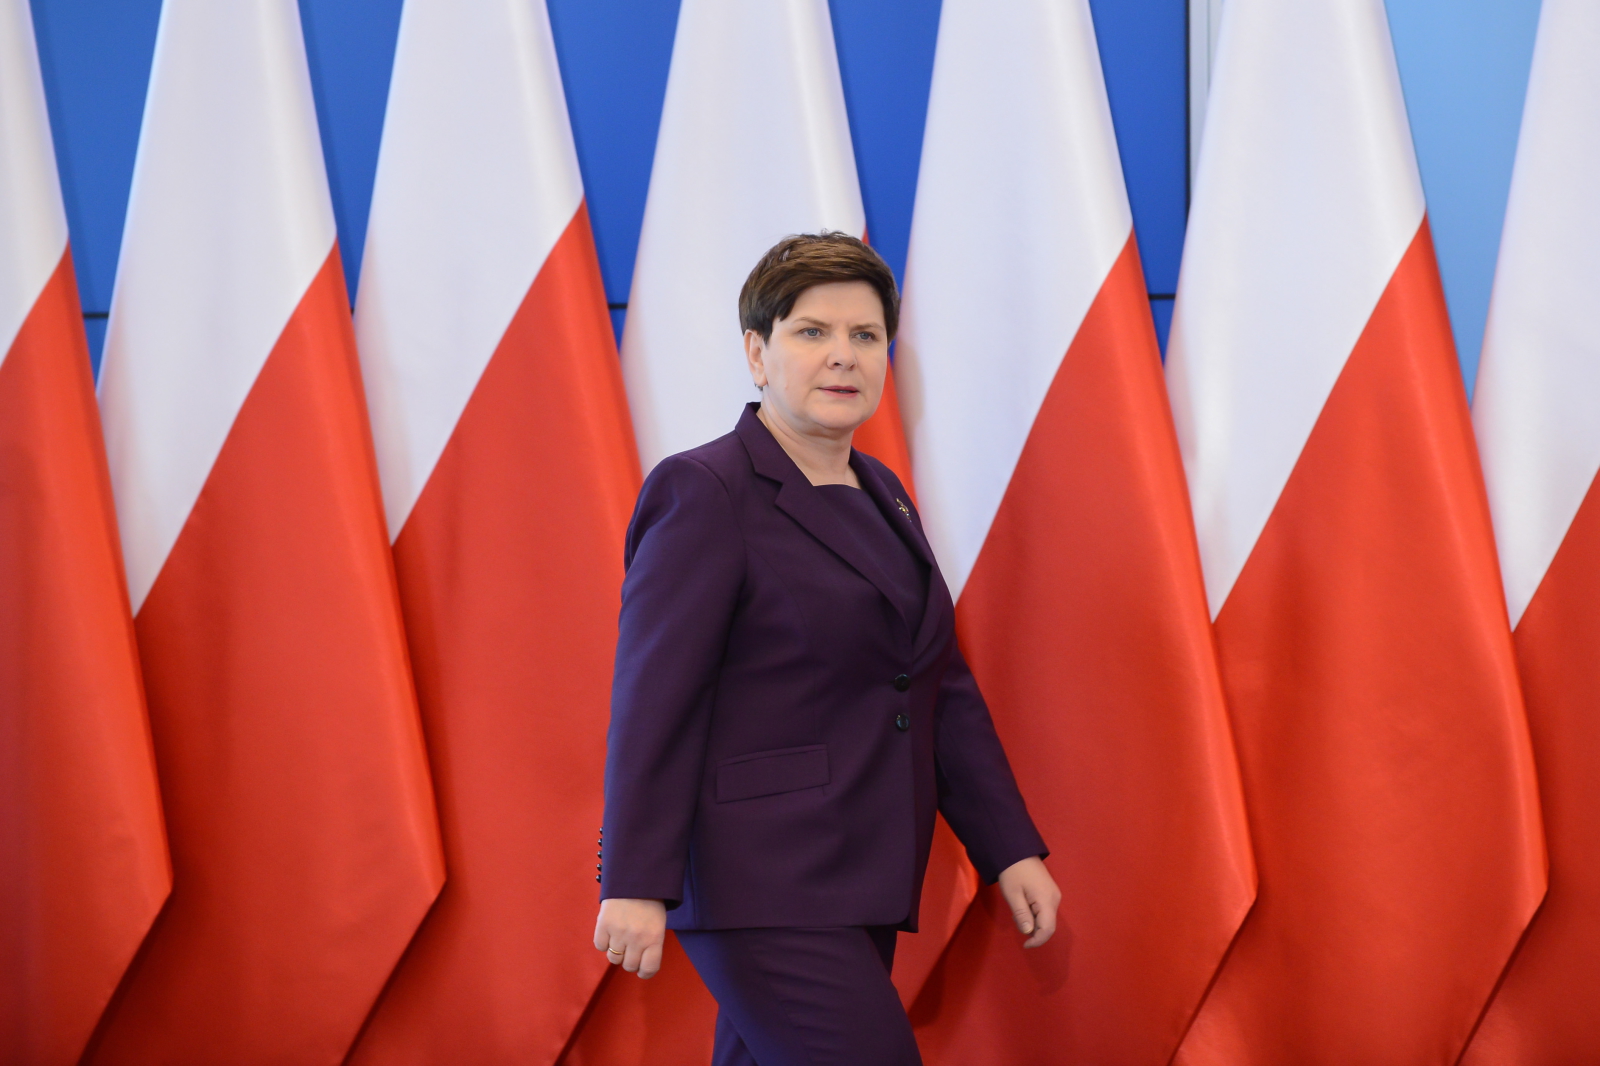 Premier Beata Szydło podczas konferencji prasowej po posiedzeniu rządu